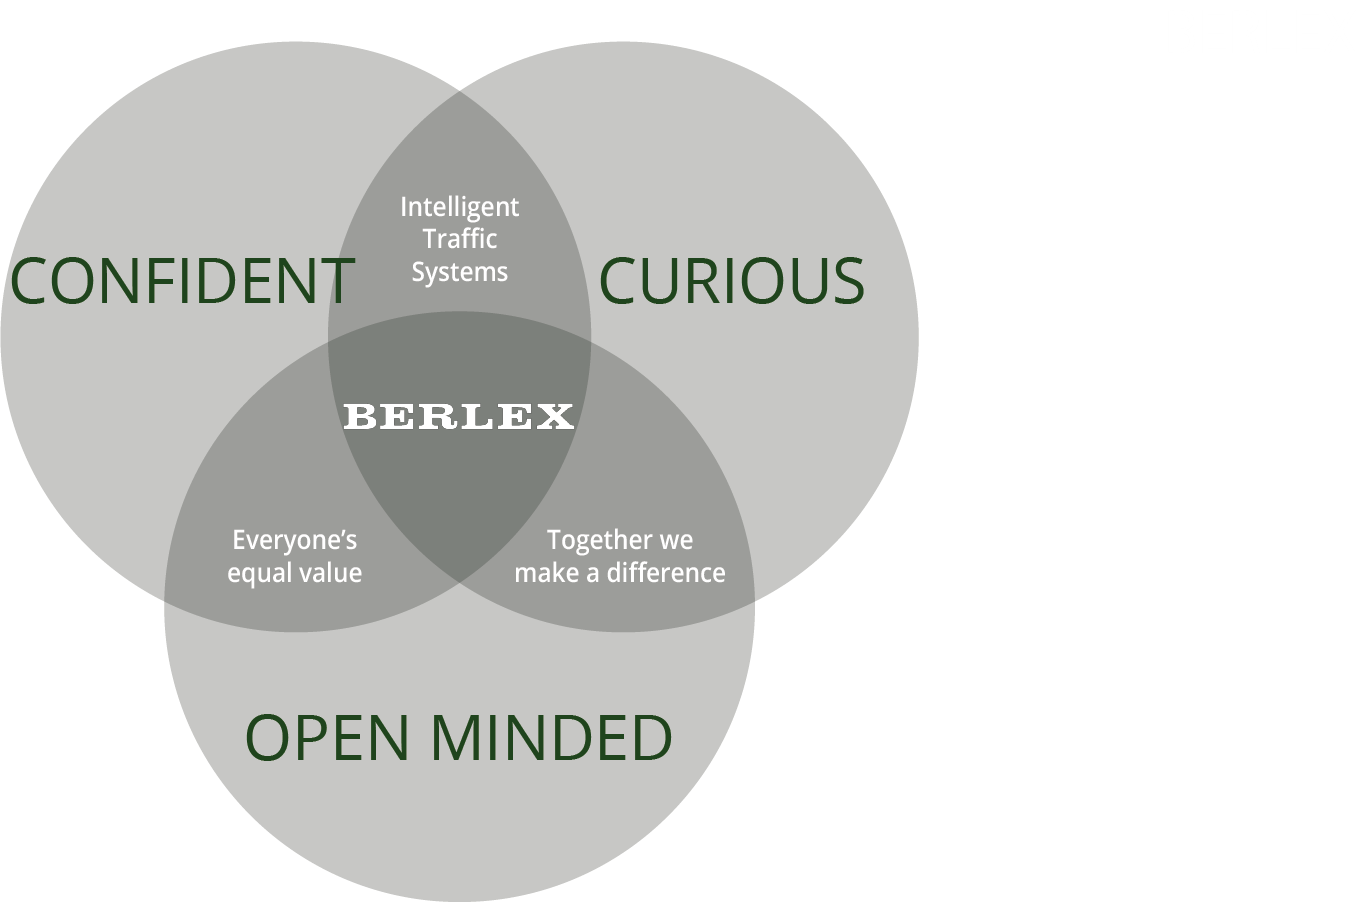 Berlex core values